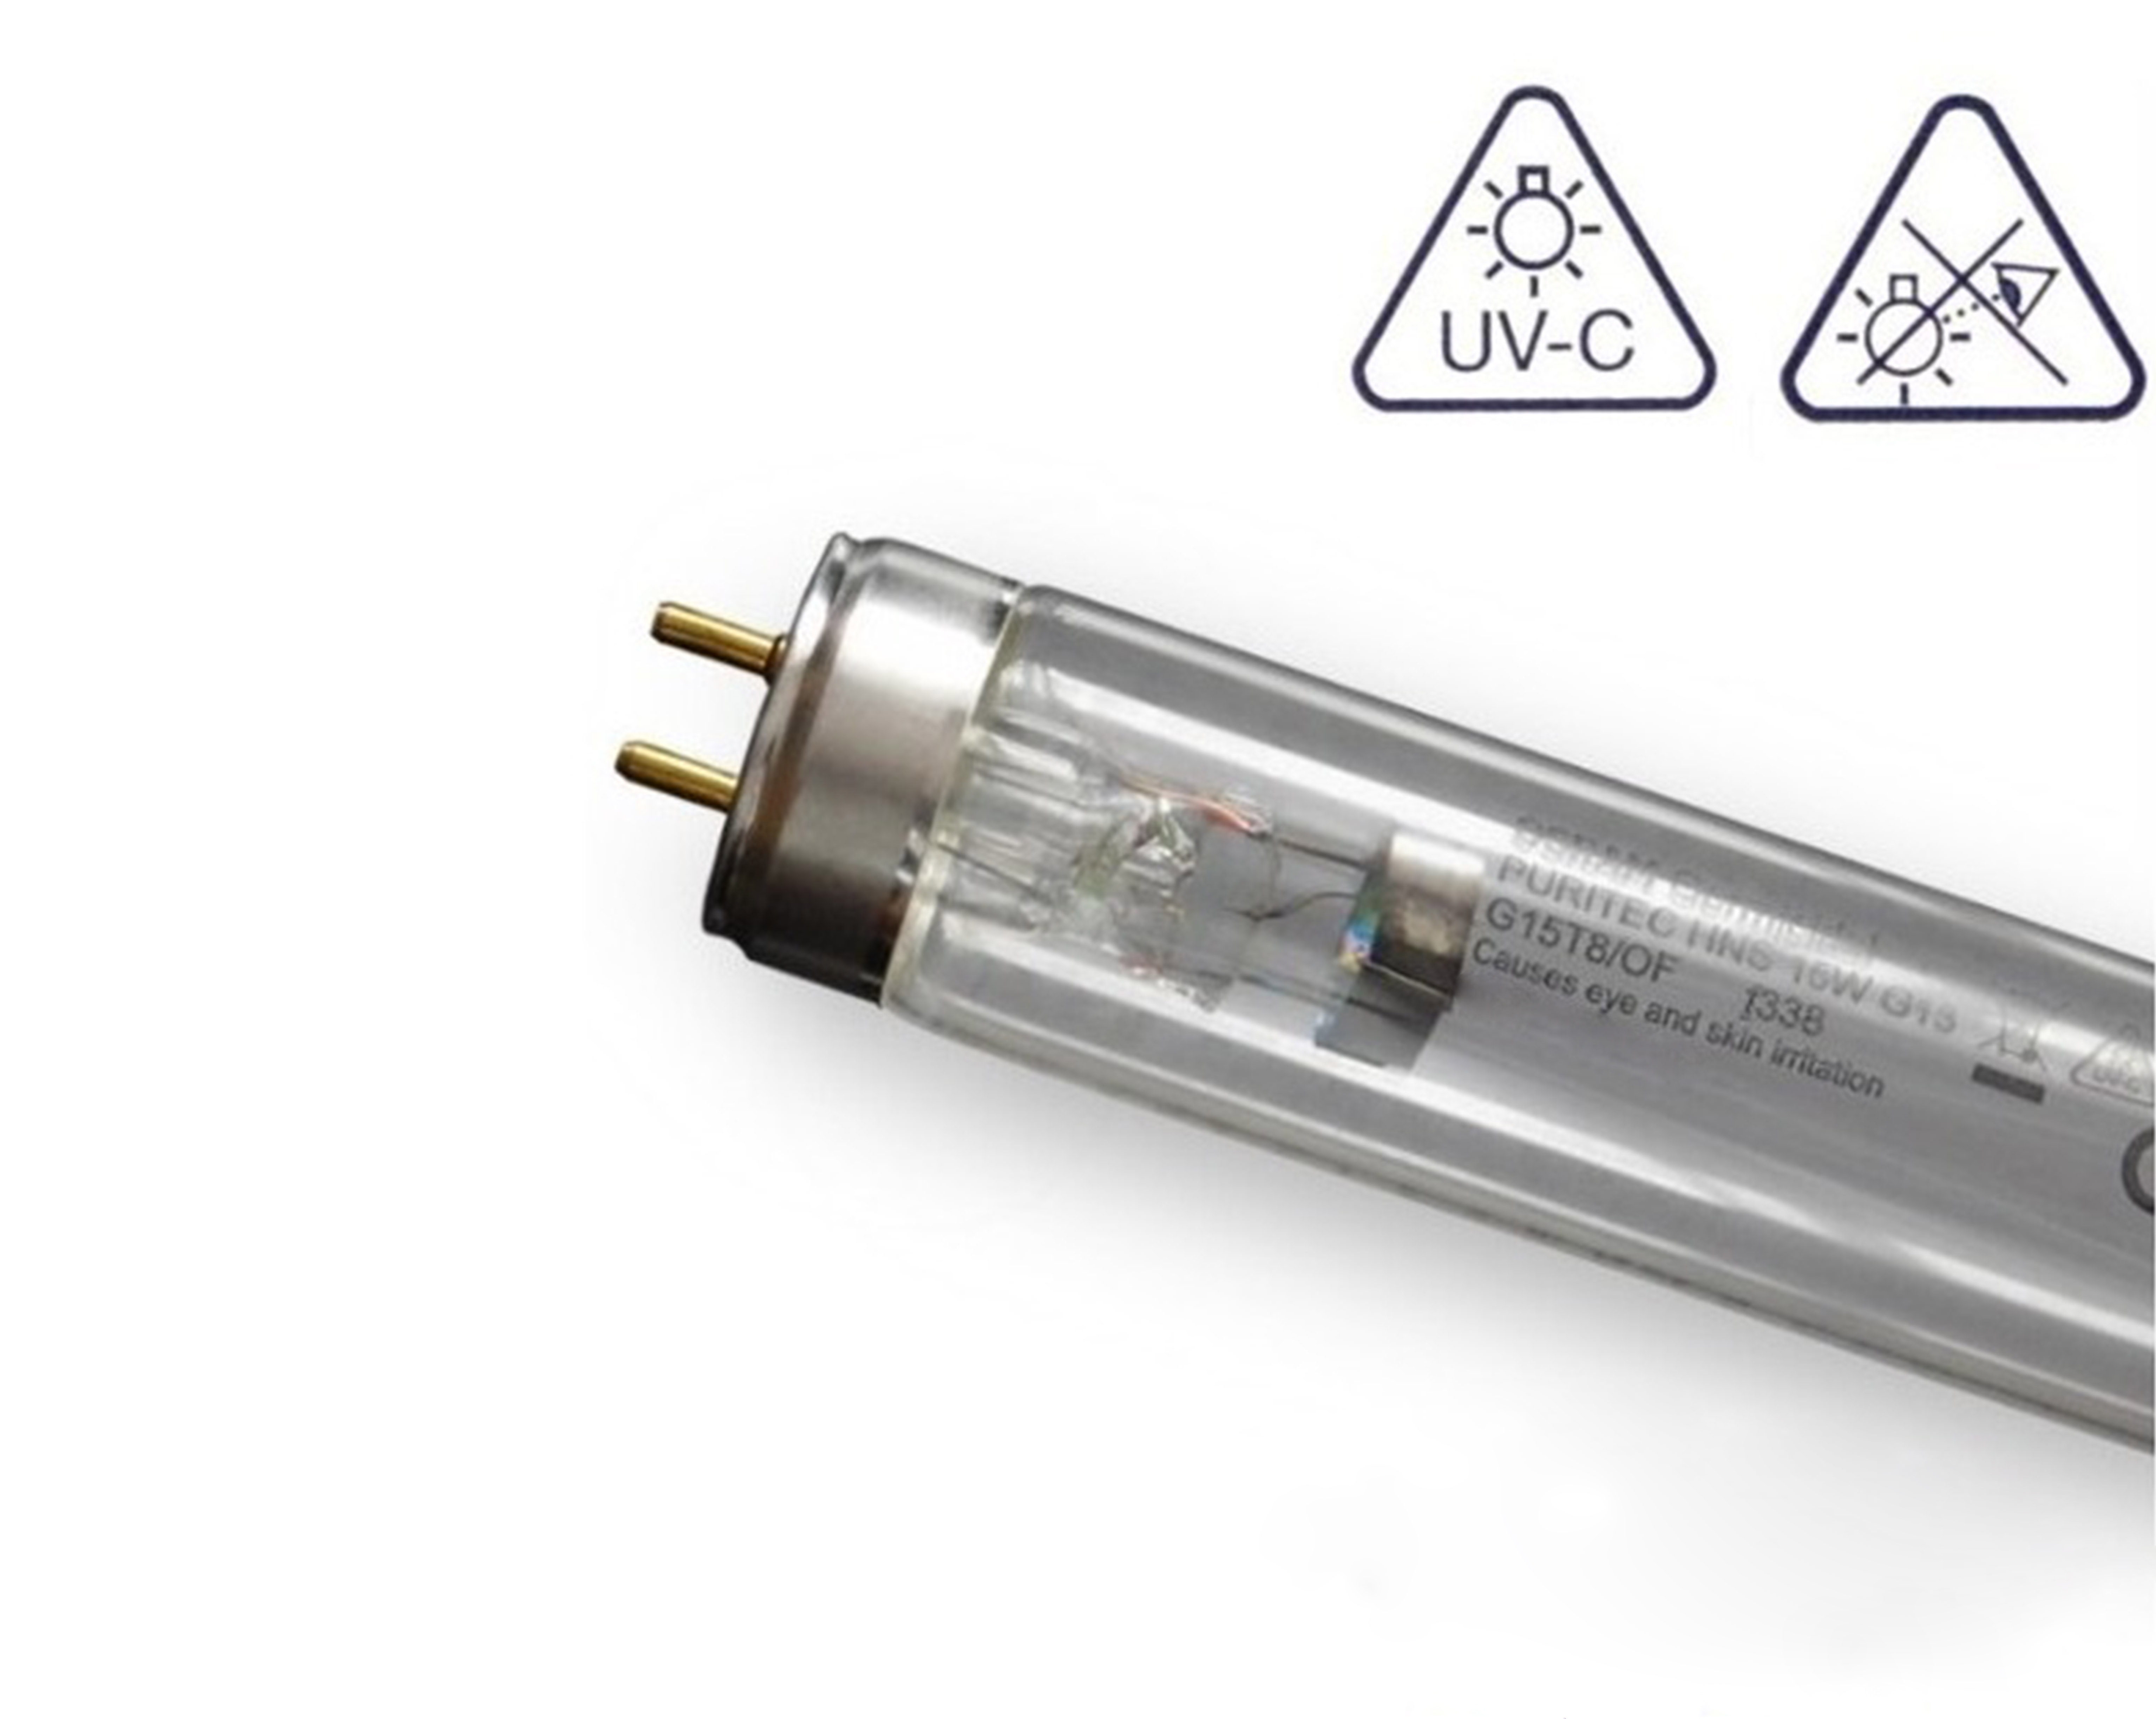 Luz ultravioleta de lámparas UV-C elimina la presencia de COVID-19